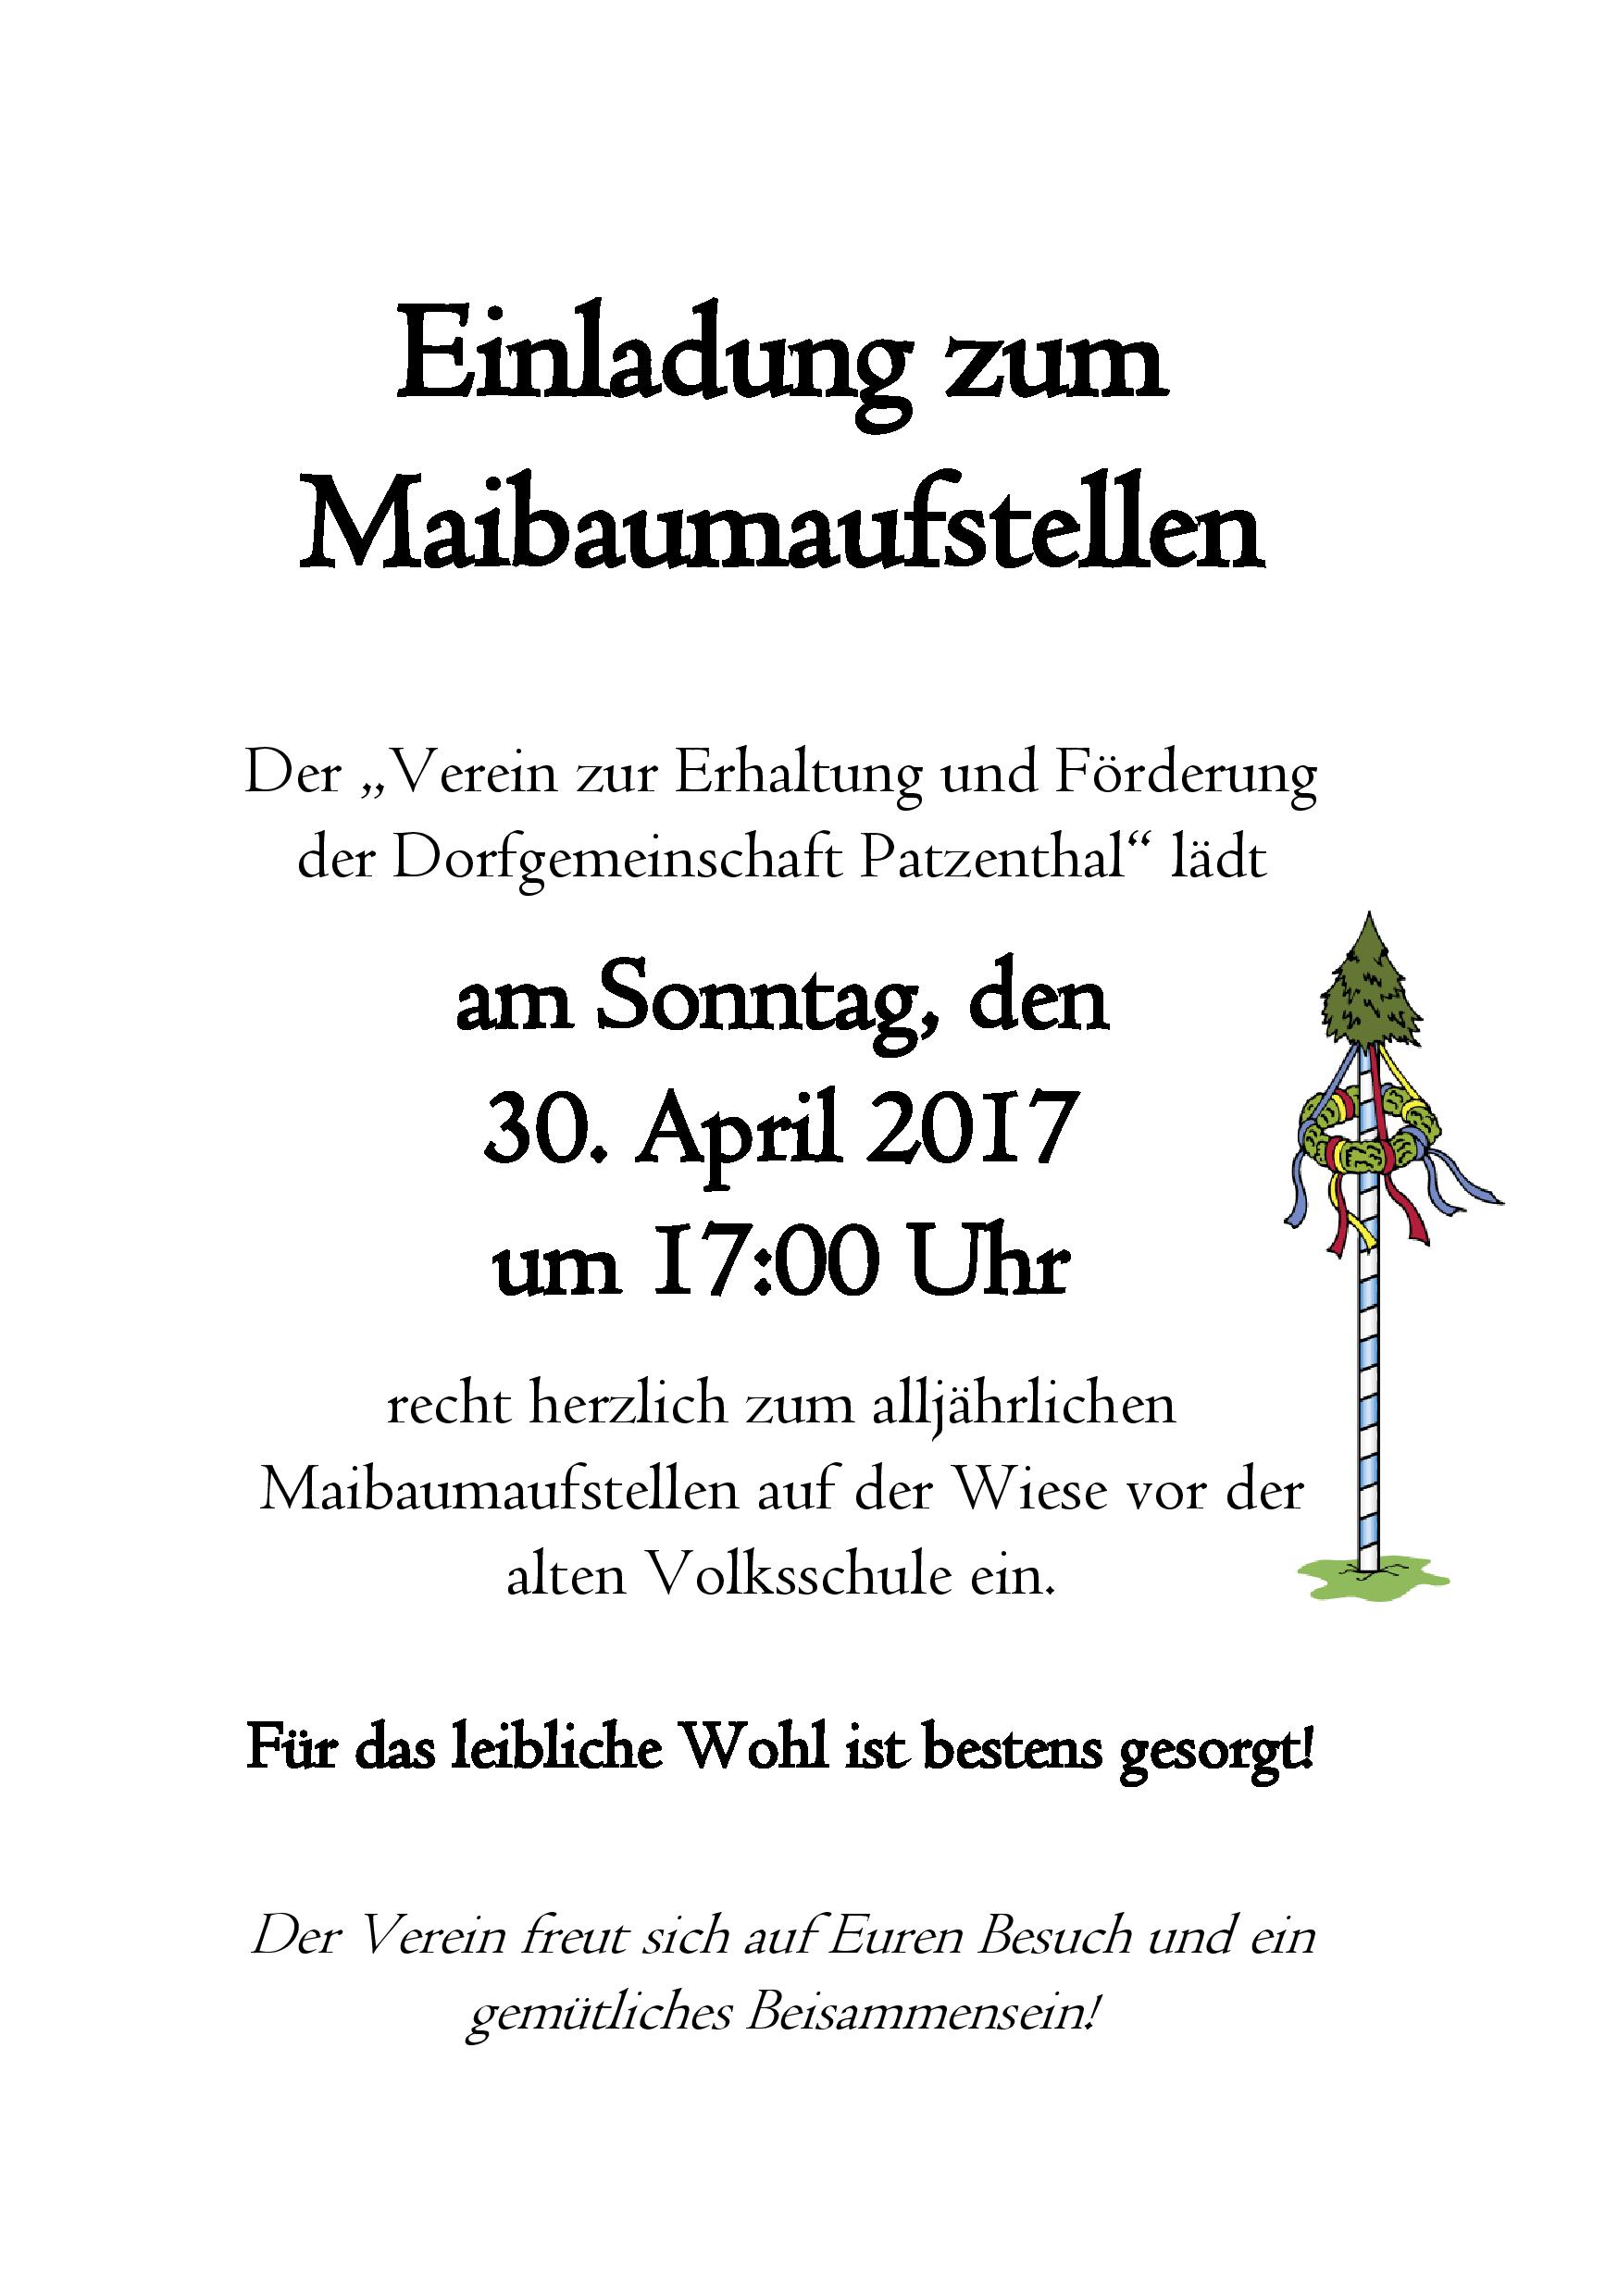 Einladung zum Maibaumaufstellen 2017